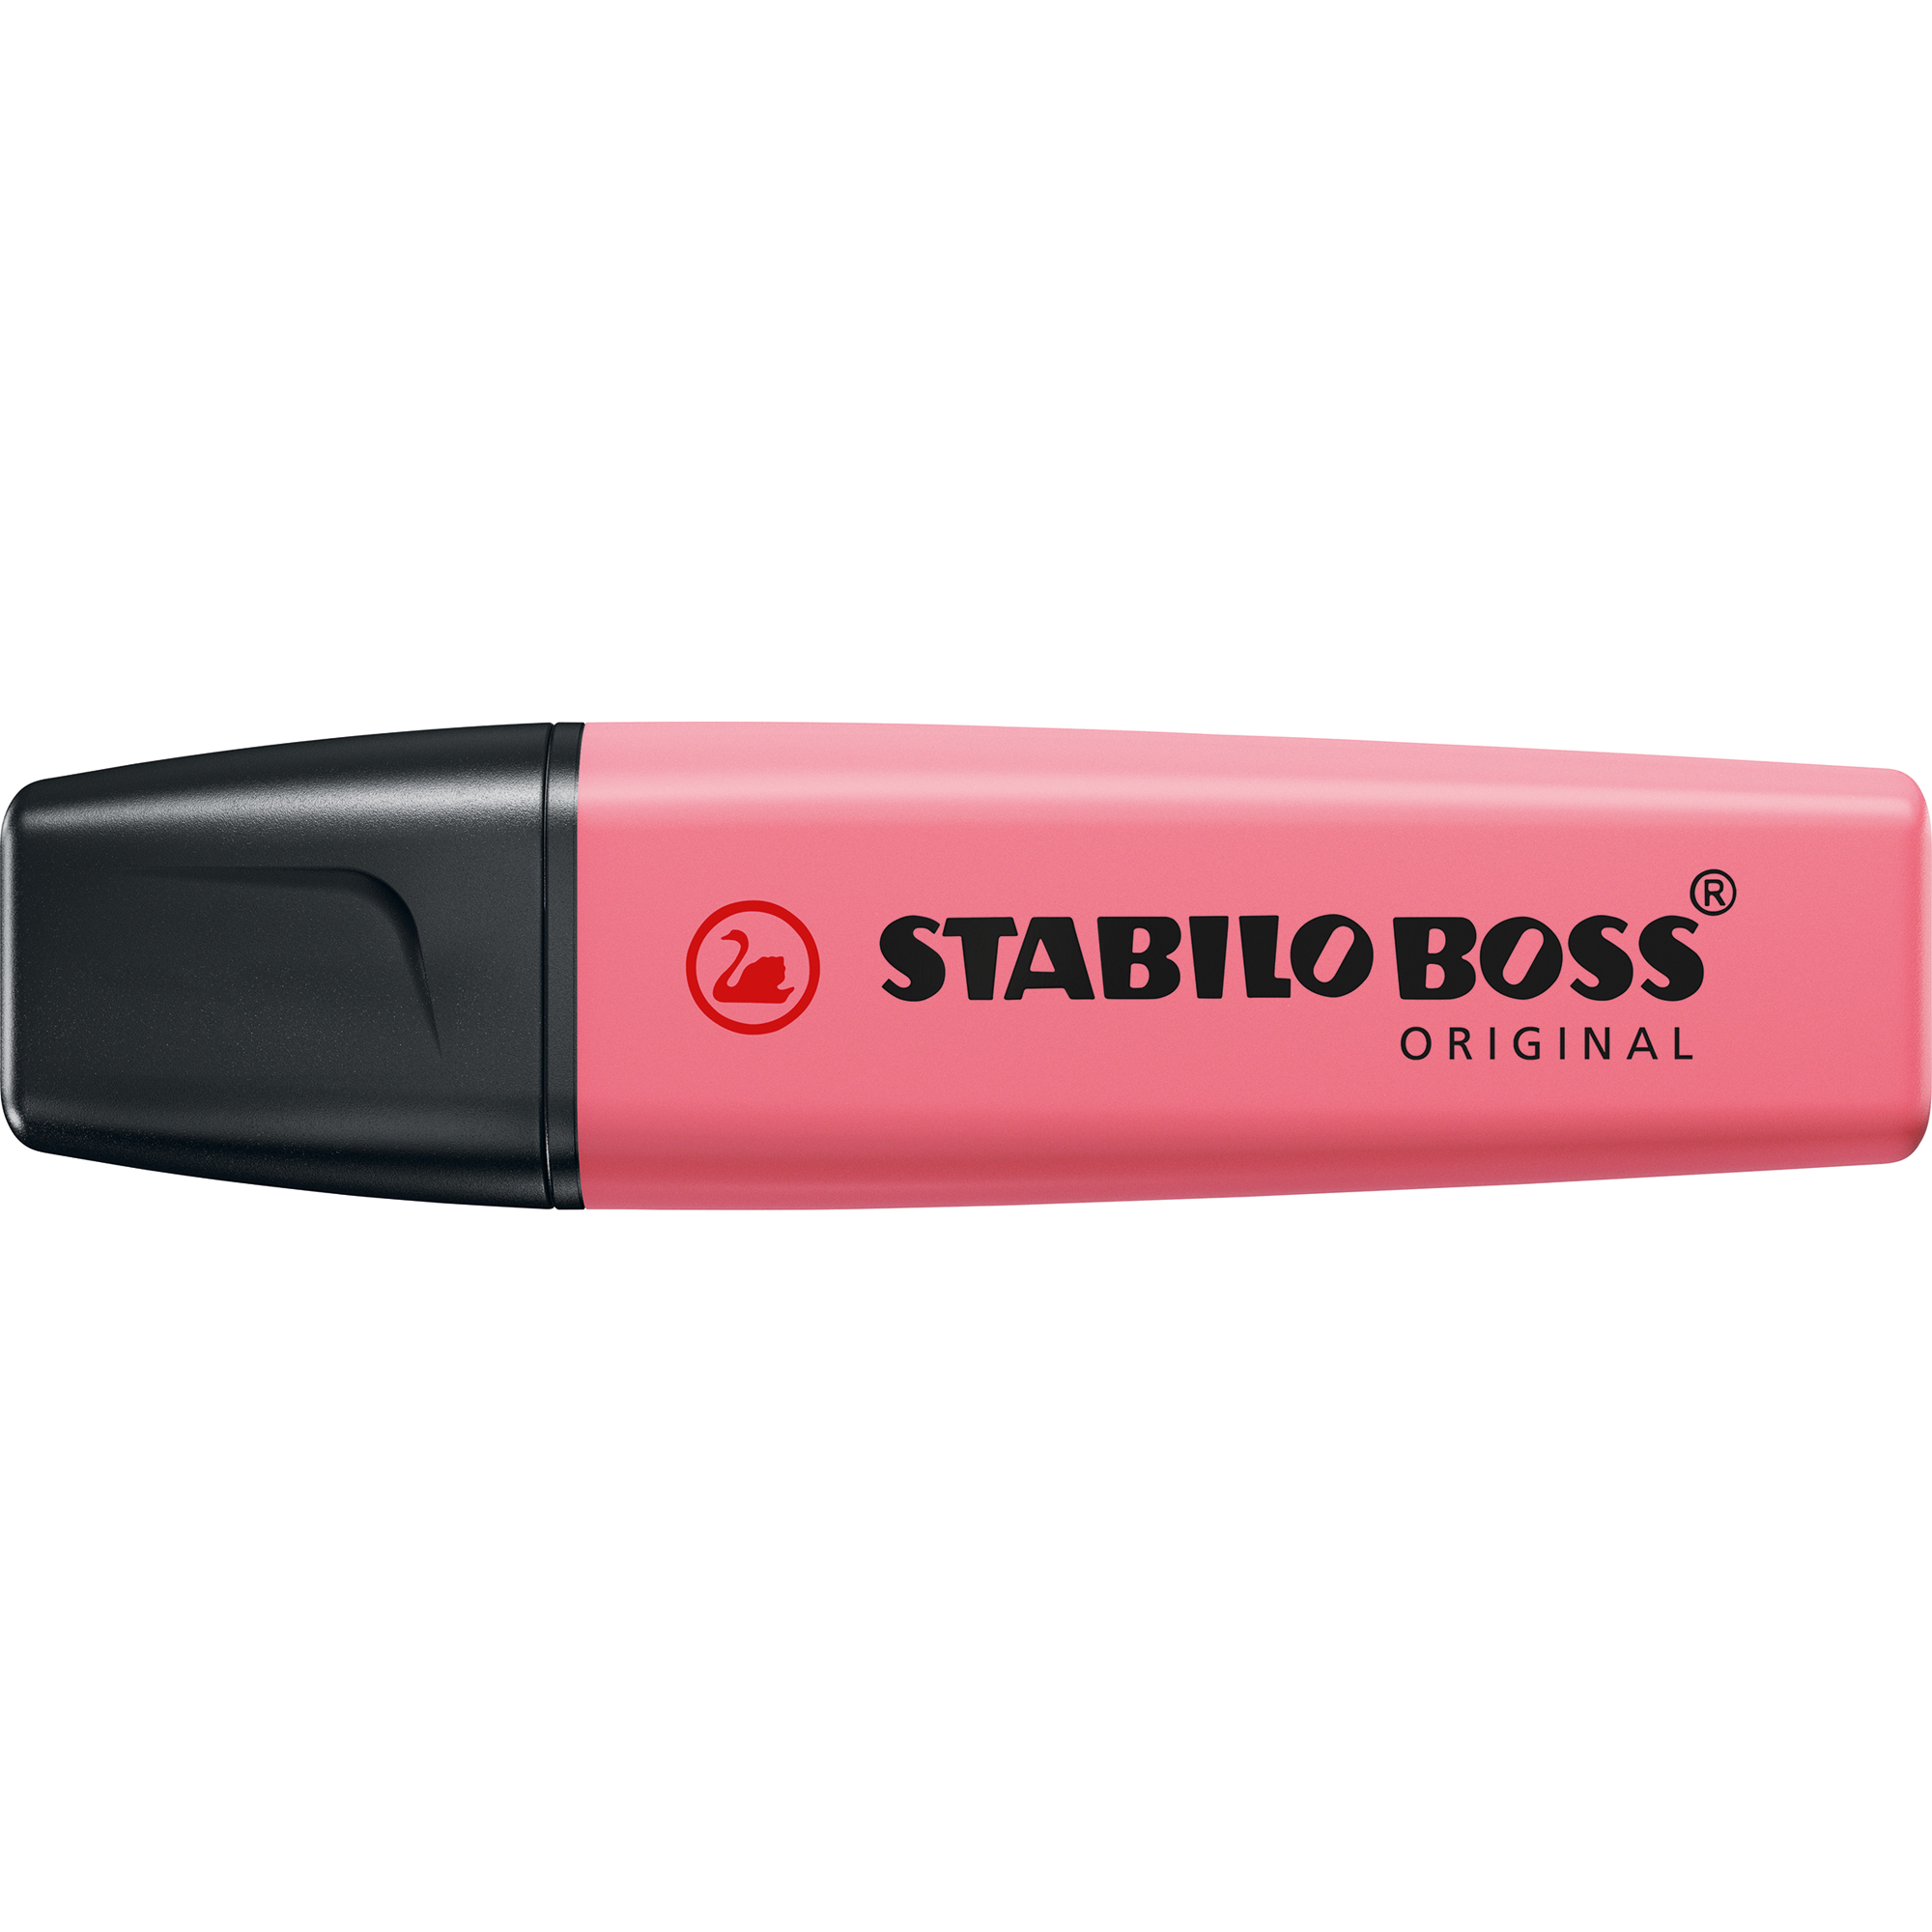 STABILO® Textmarker BOSS® ORIGINAL Pastellfarben rosa